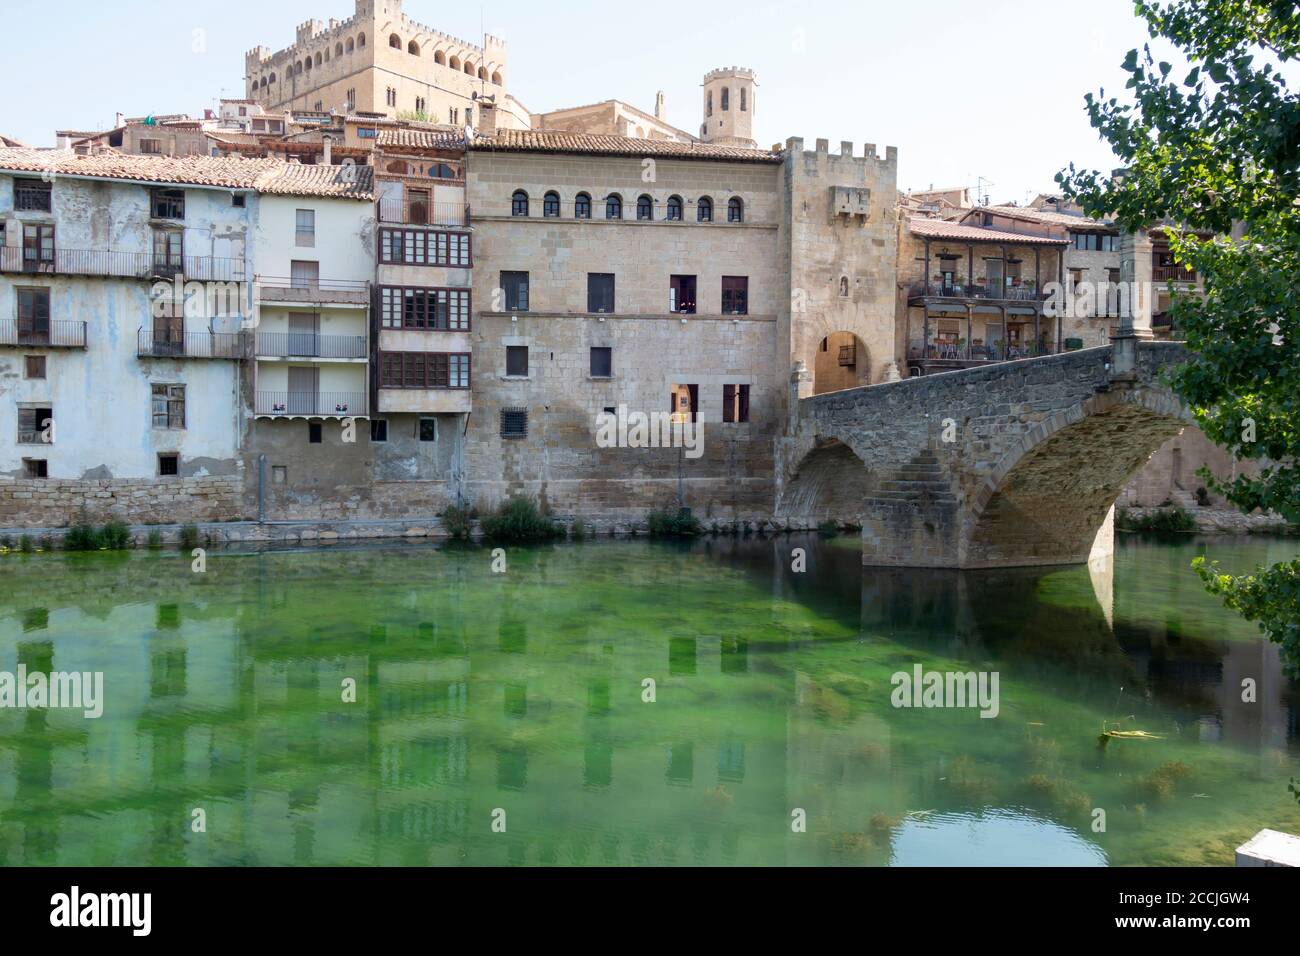 Ciudad medieval de Valderrobres, en la provincia de Teruel, Aragón (España). El río Matarraya y el famoso puente medieval Foto de stock